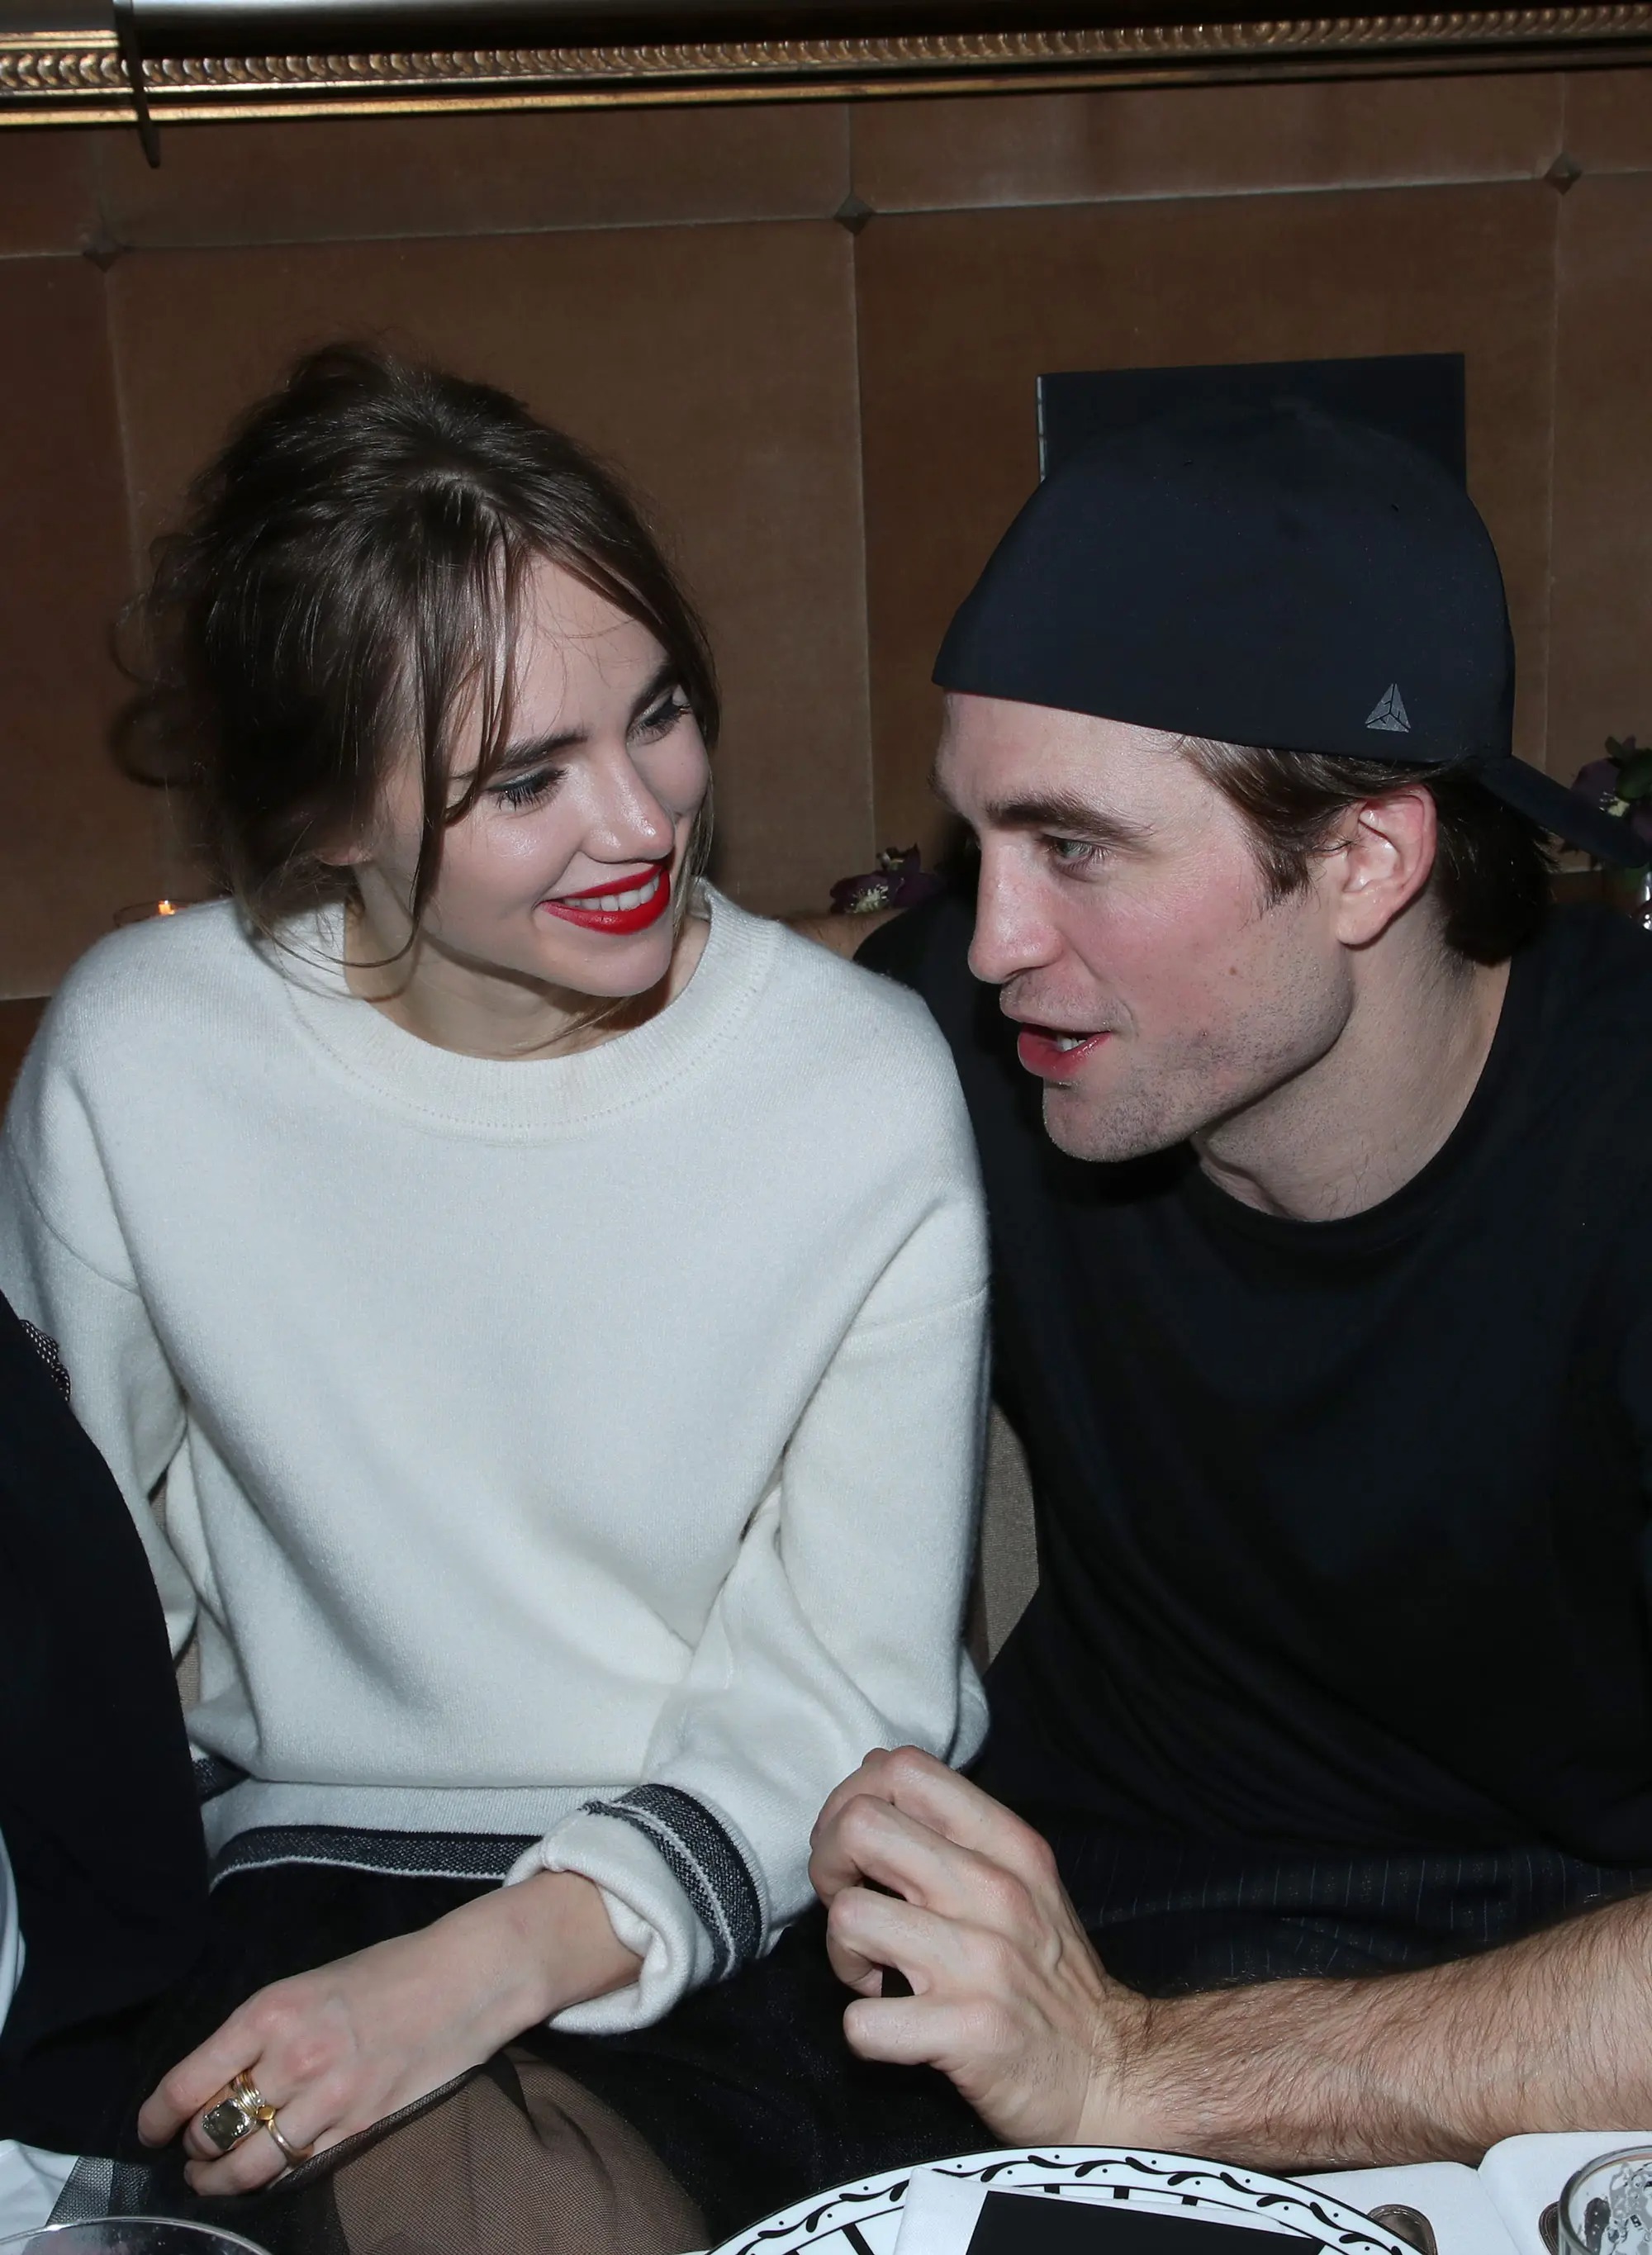 Ma cà rồng Robert Pattinson và bạn gái người mẫu lần đầu công khai lộ diện sau 4 năm yêu, visual cả đôi gây xôn xao - Ảnh 8.